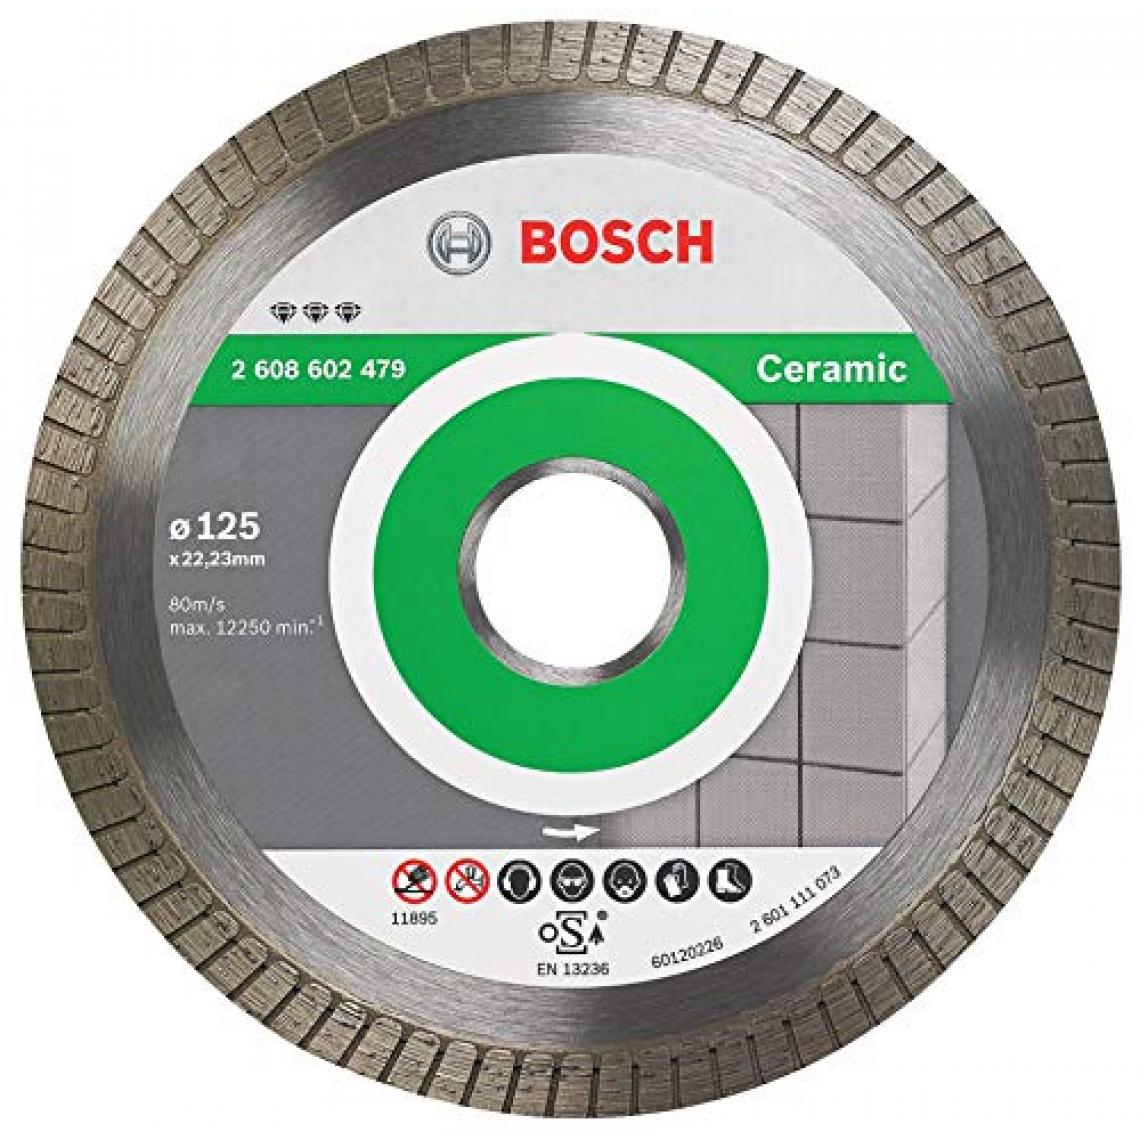 Bosch - Disque diamanté Best for Ceramic Extra-Clean Turbo (céramique, 125 x 22,23 mm, accessoires pour meuleuse angulaire) - Accessoires ponçage